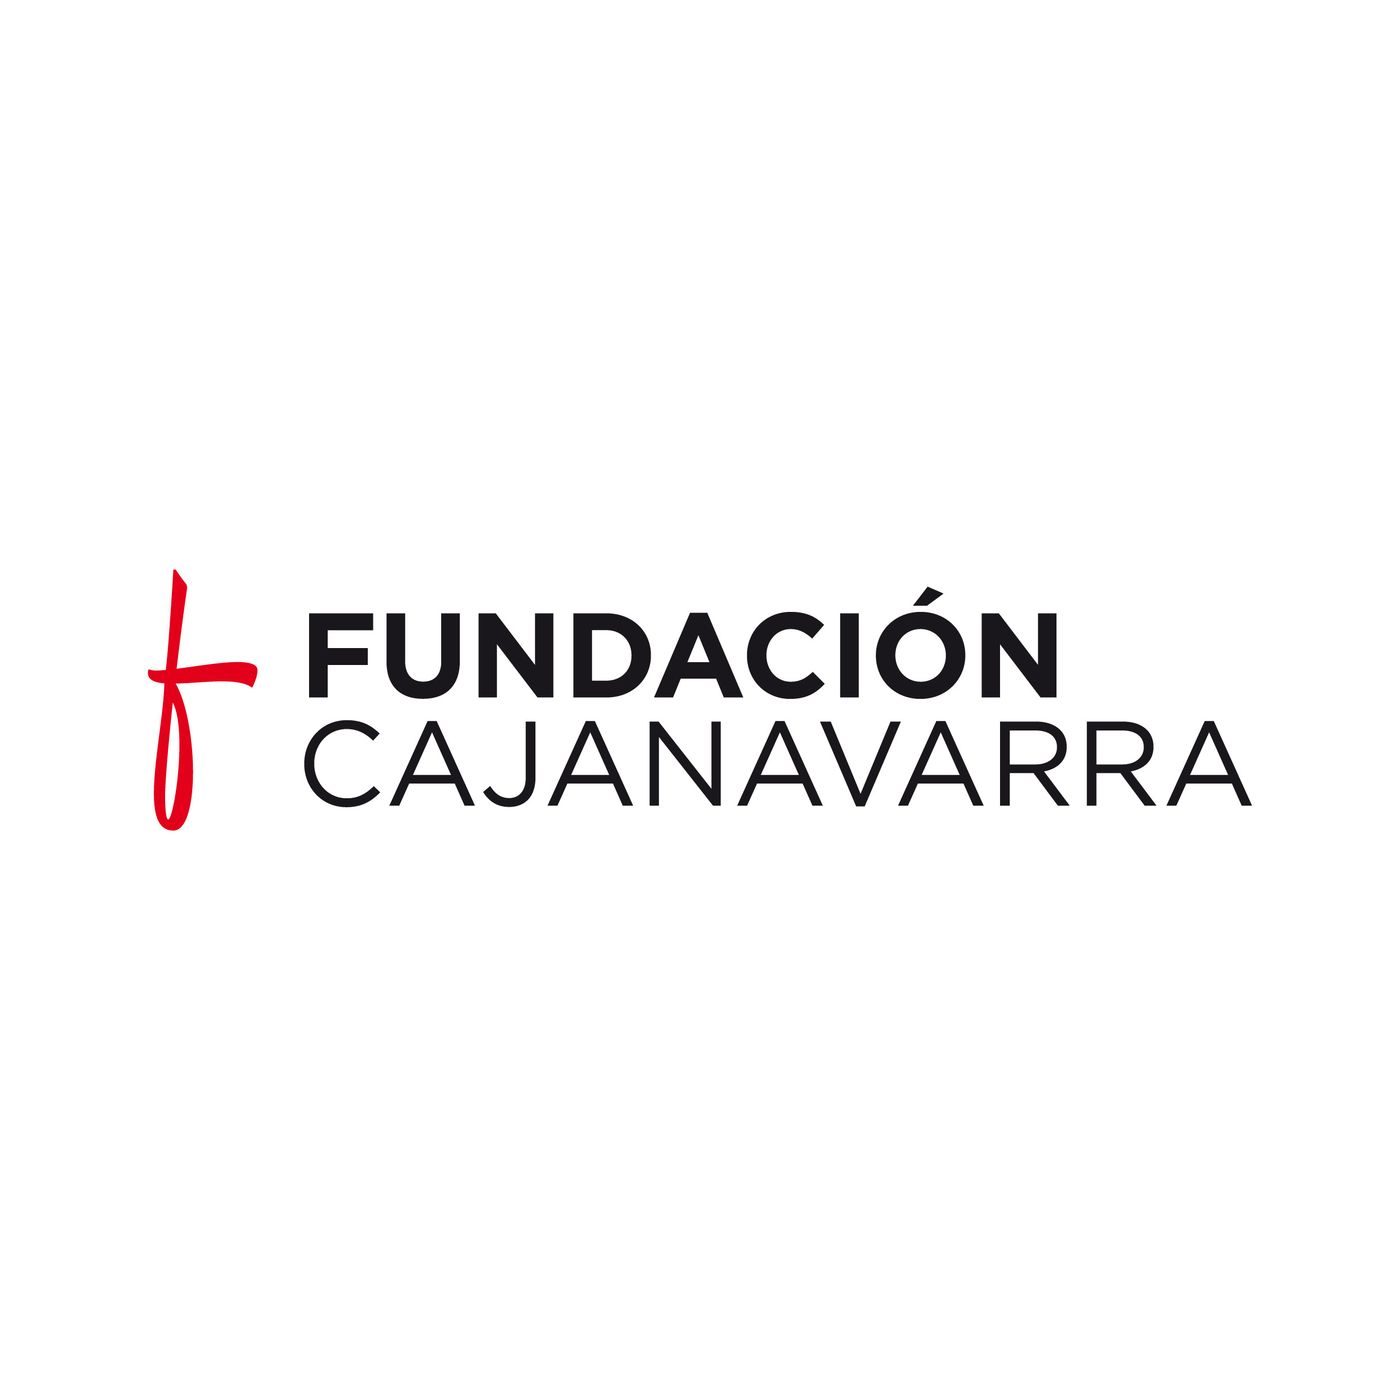 Pistas de Fundación Caja Navarra